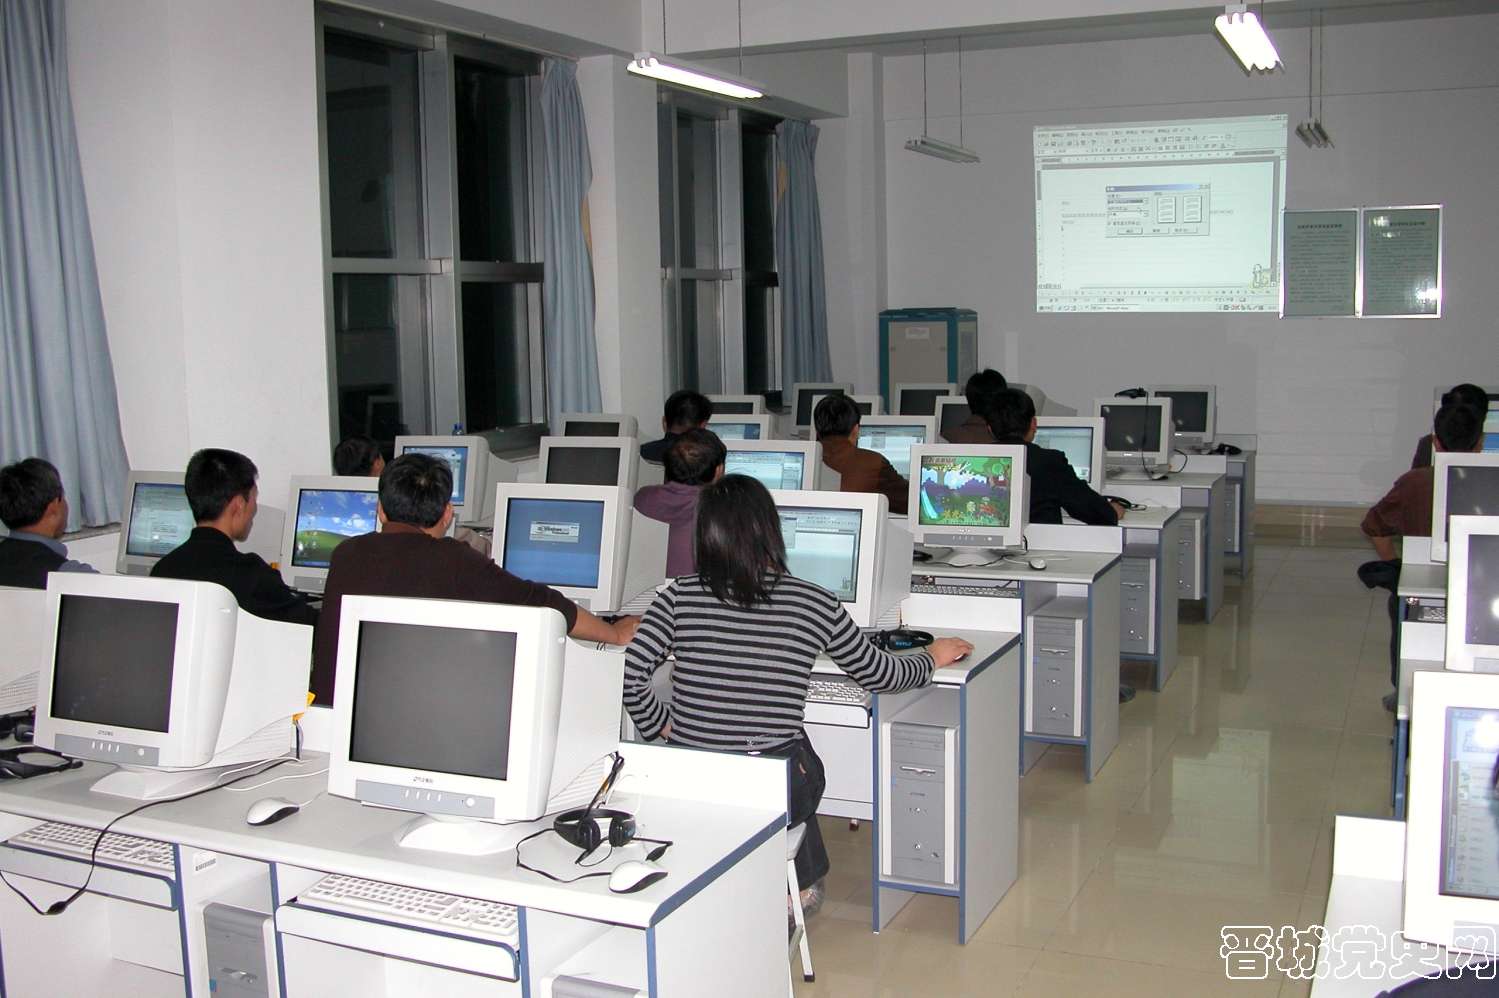 6、晋城市金融网络培训中心。（摄影：崔利民）